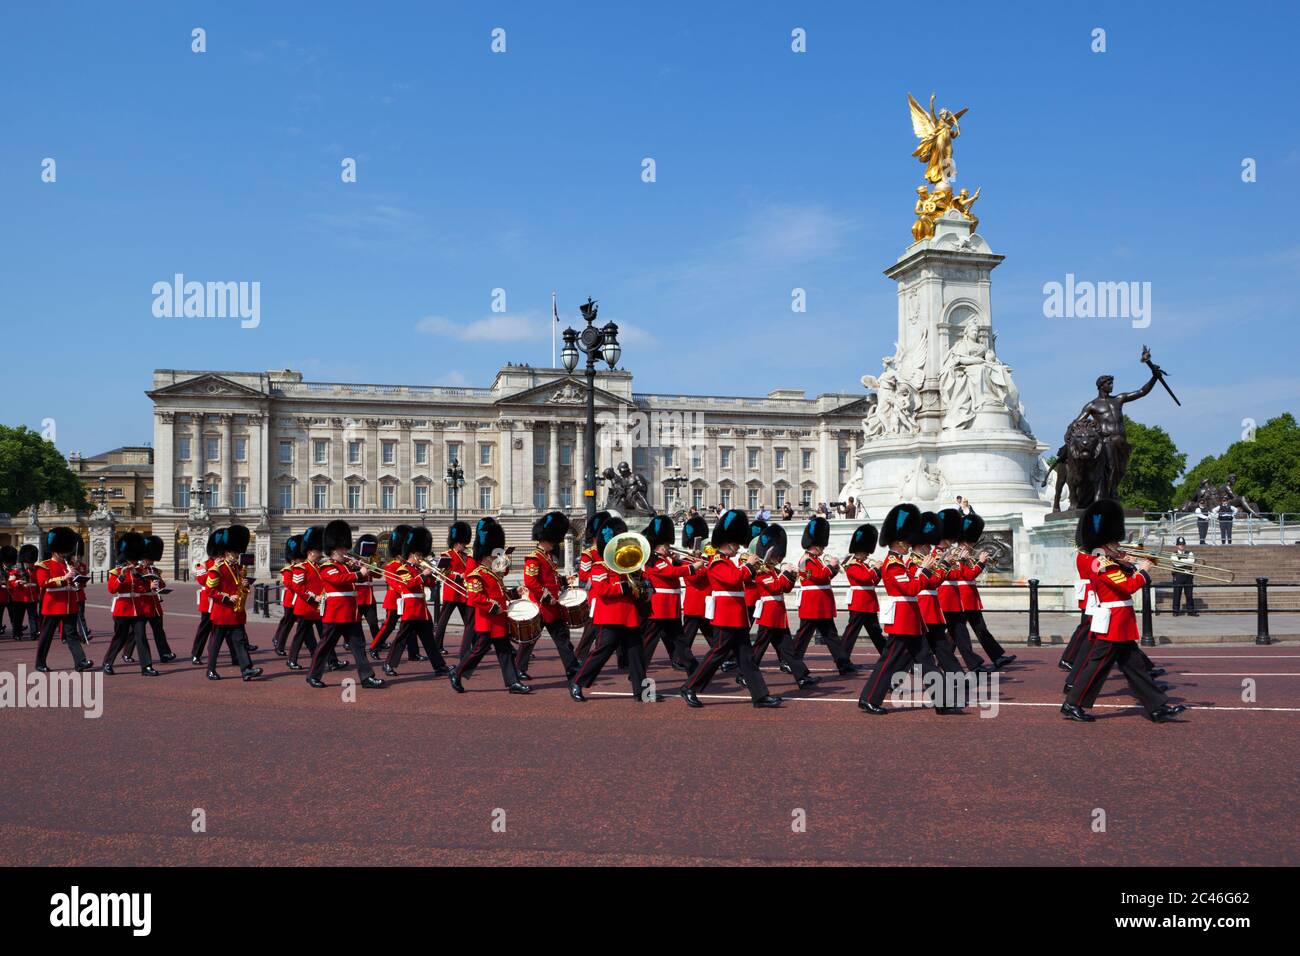 Band of the Irish Guards marching past Buckingham Palace, London, England, United Kingdom, Europe Stock Photo